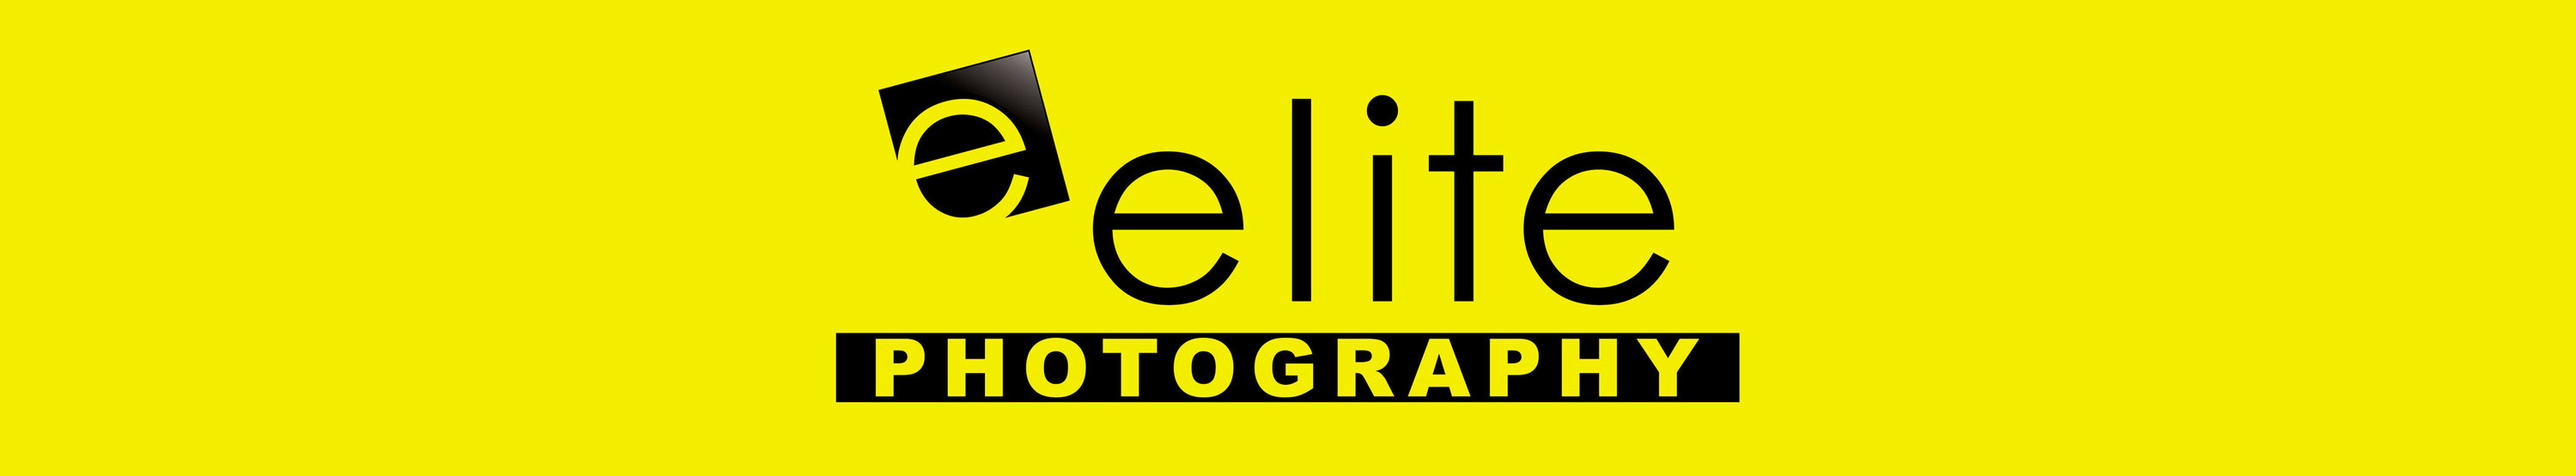 Senior Pictures | Elite Photography | Cincinnati